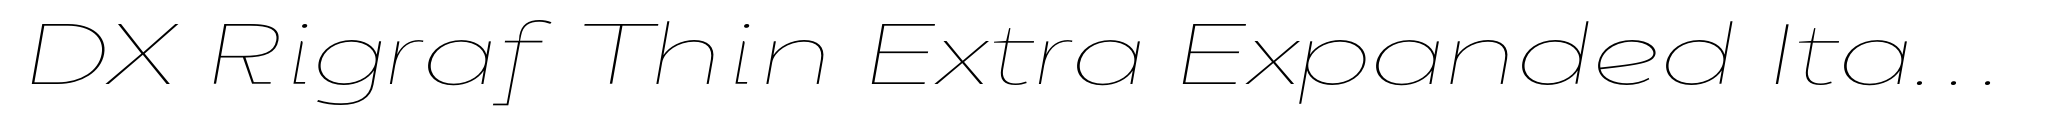 DX Rigraf Thin Extra Expanded Italic image